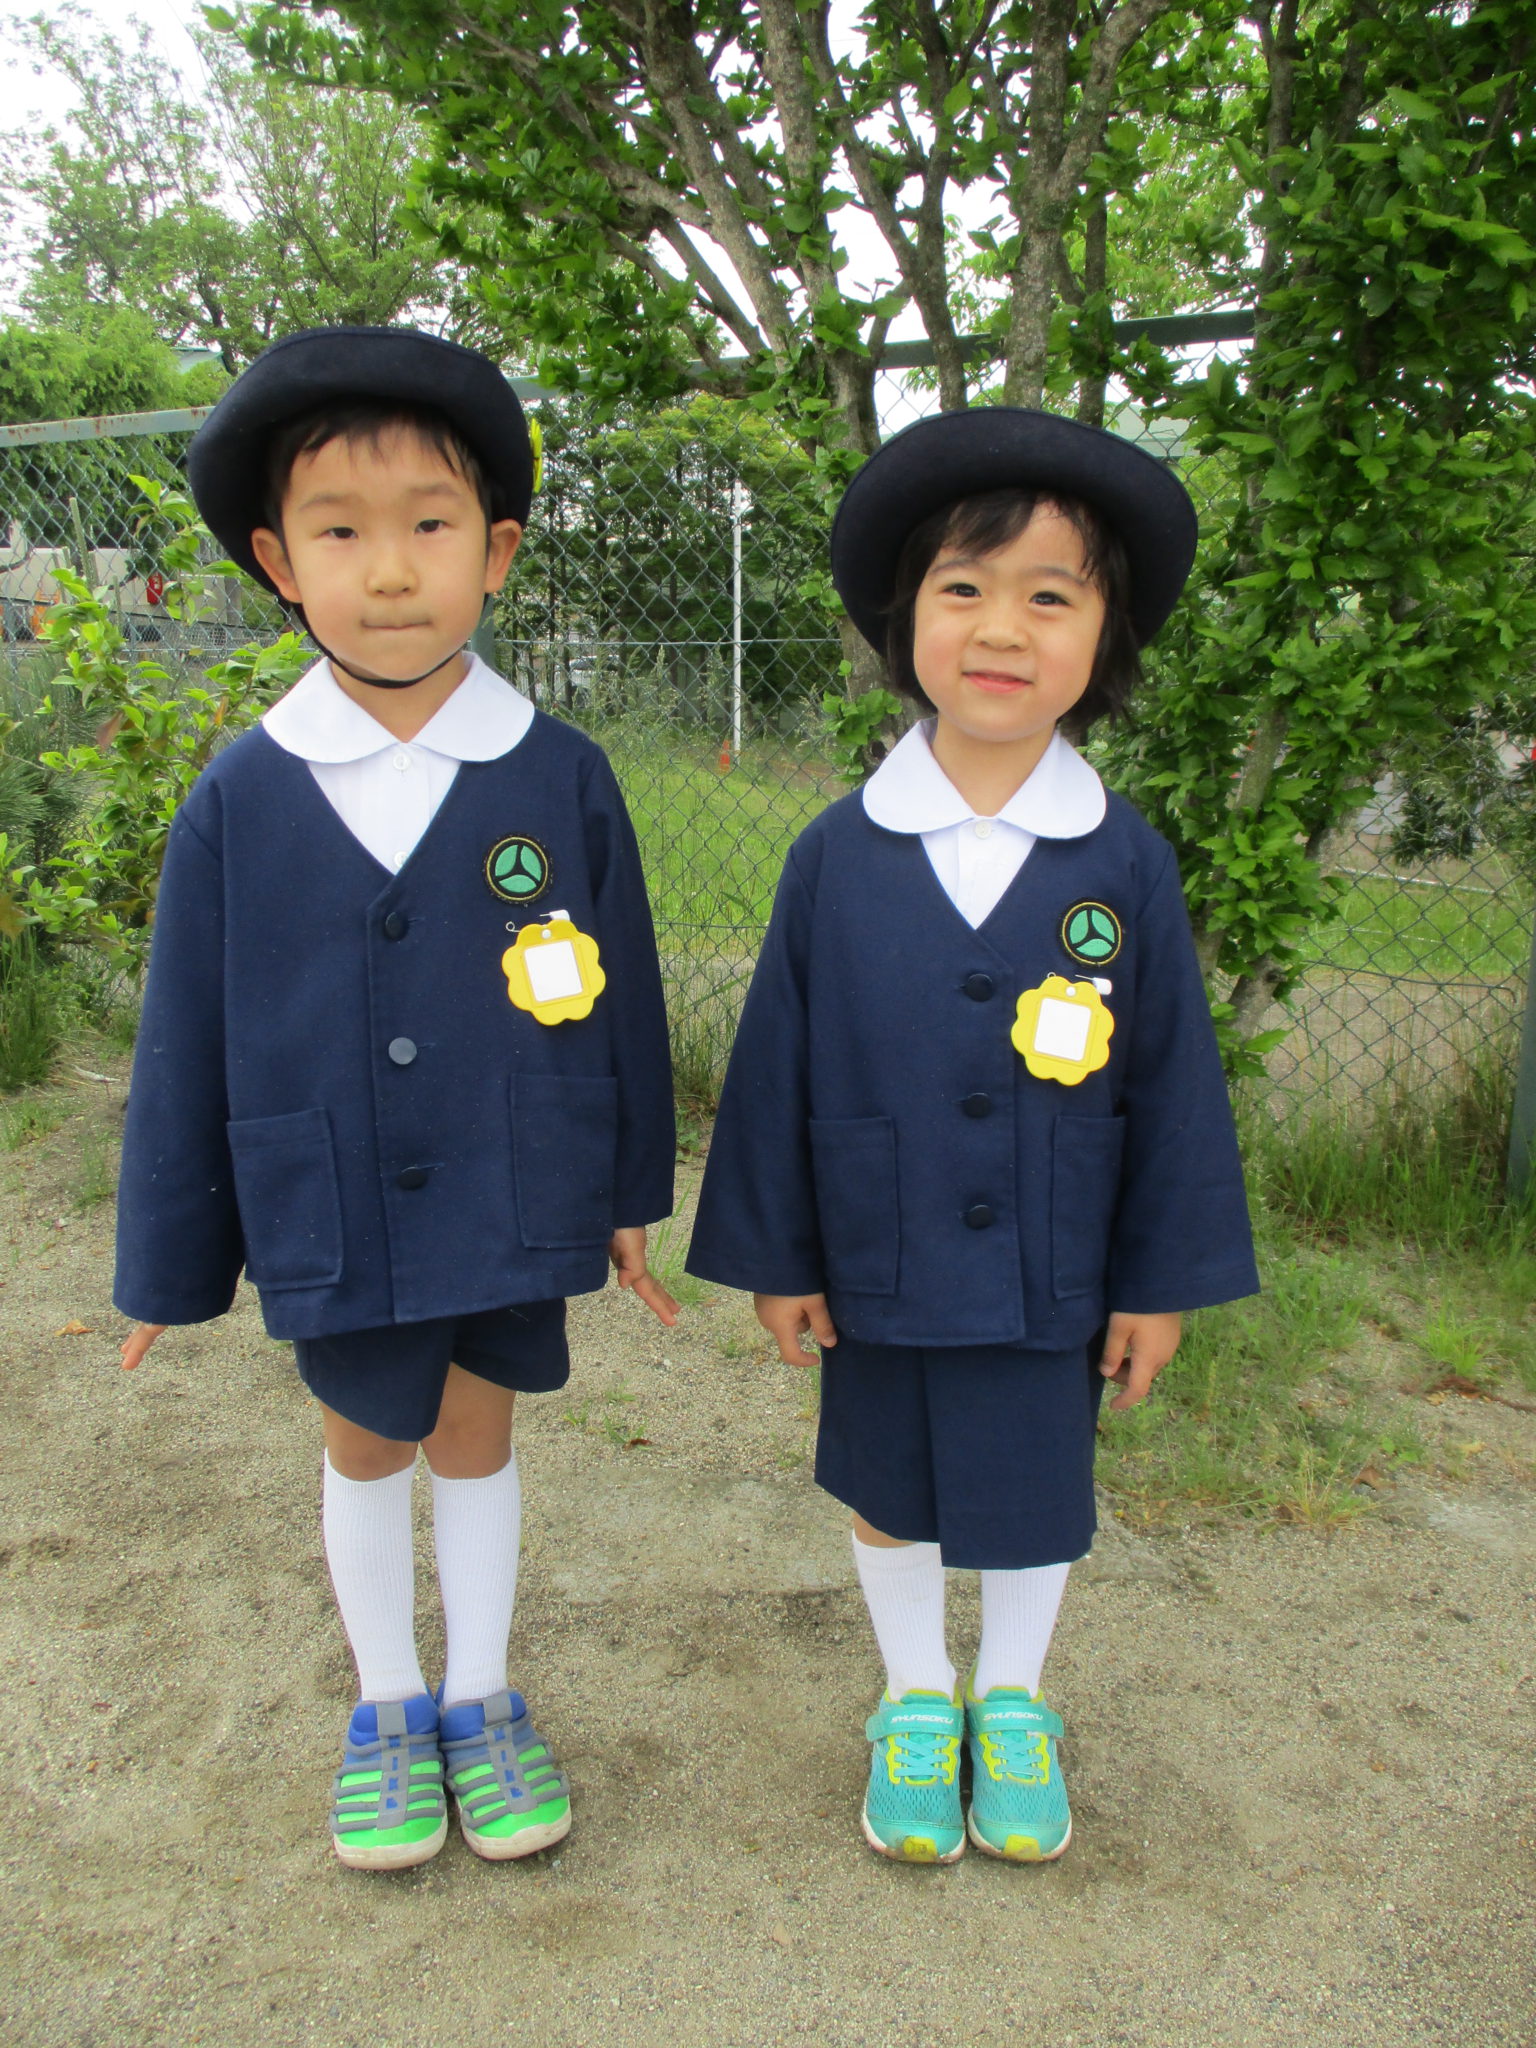 制服セットの内容上着130大和八幡幼稚園制服セット（男児）東京都東大和市の幼稚園